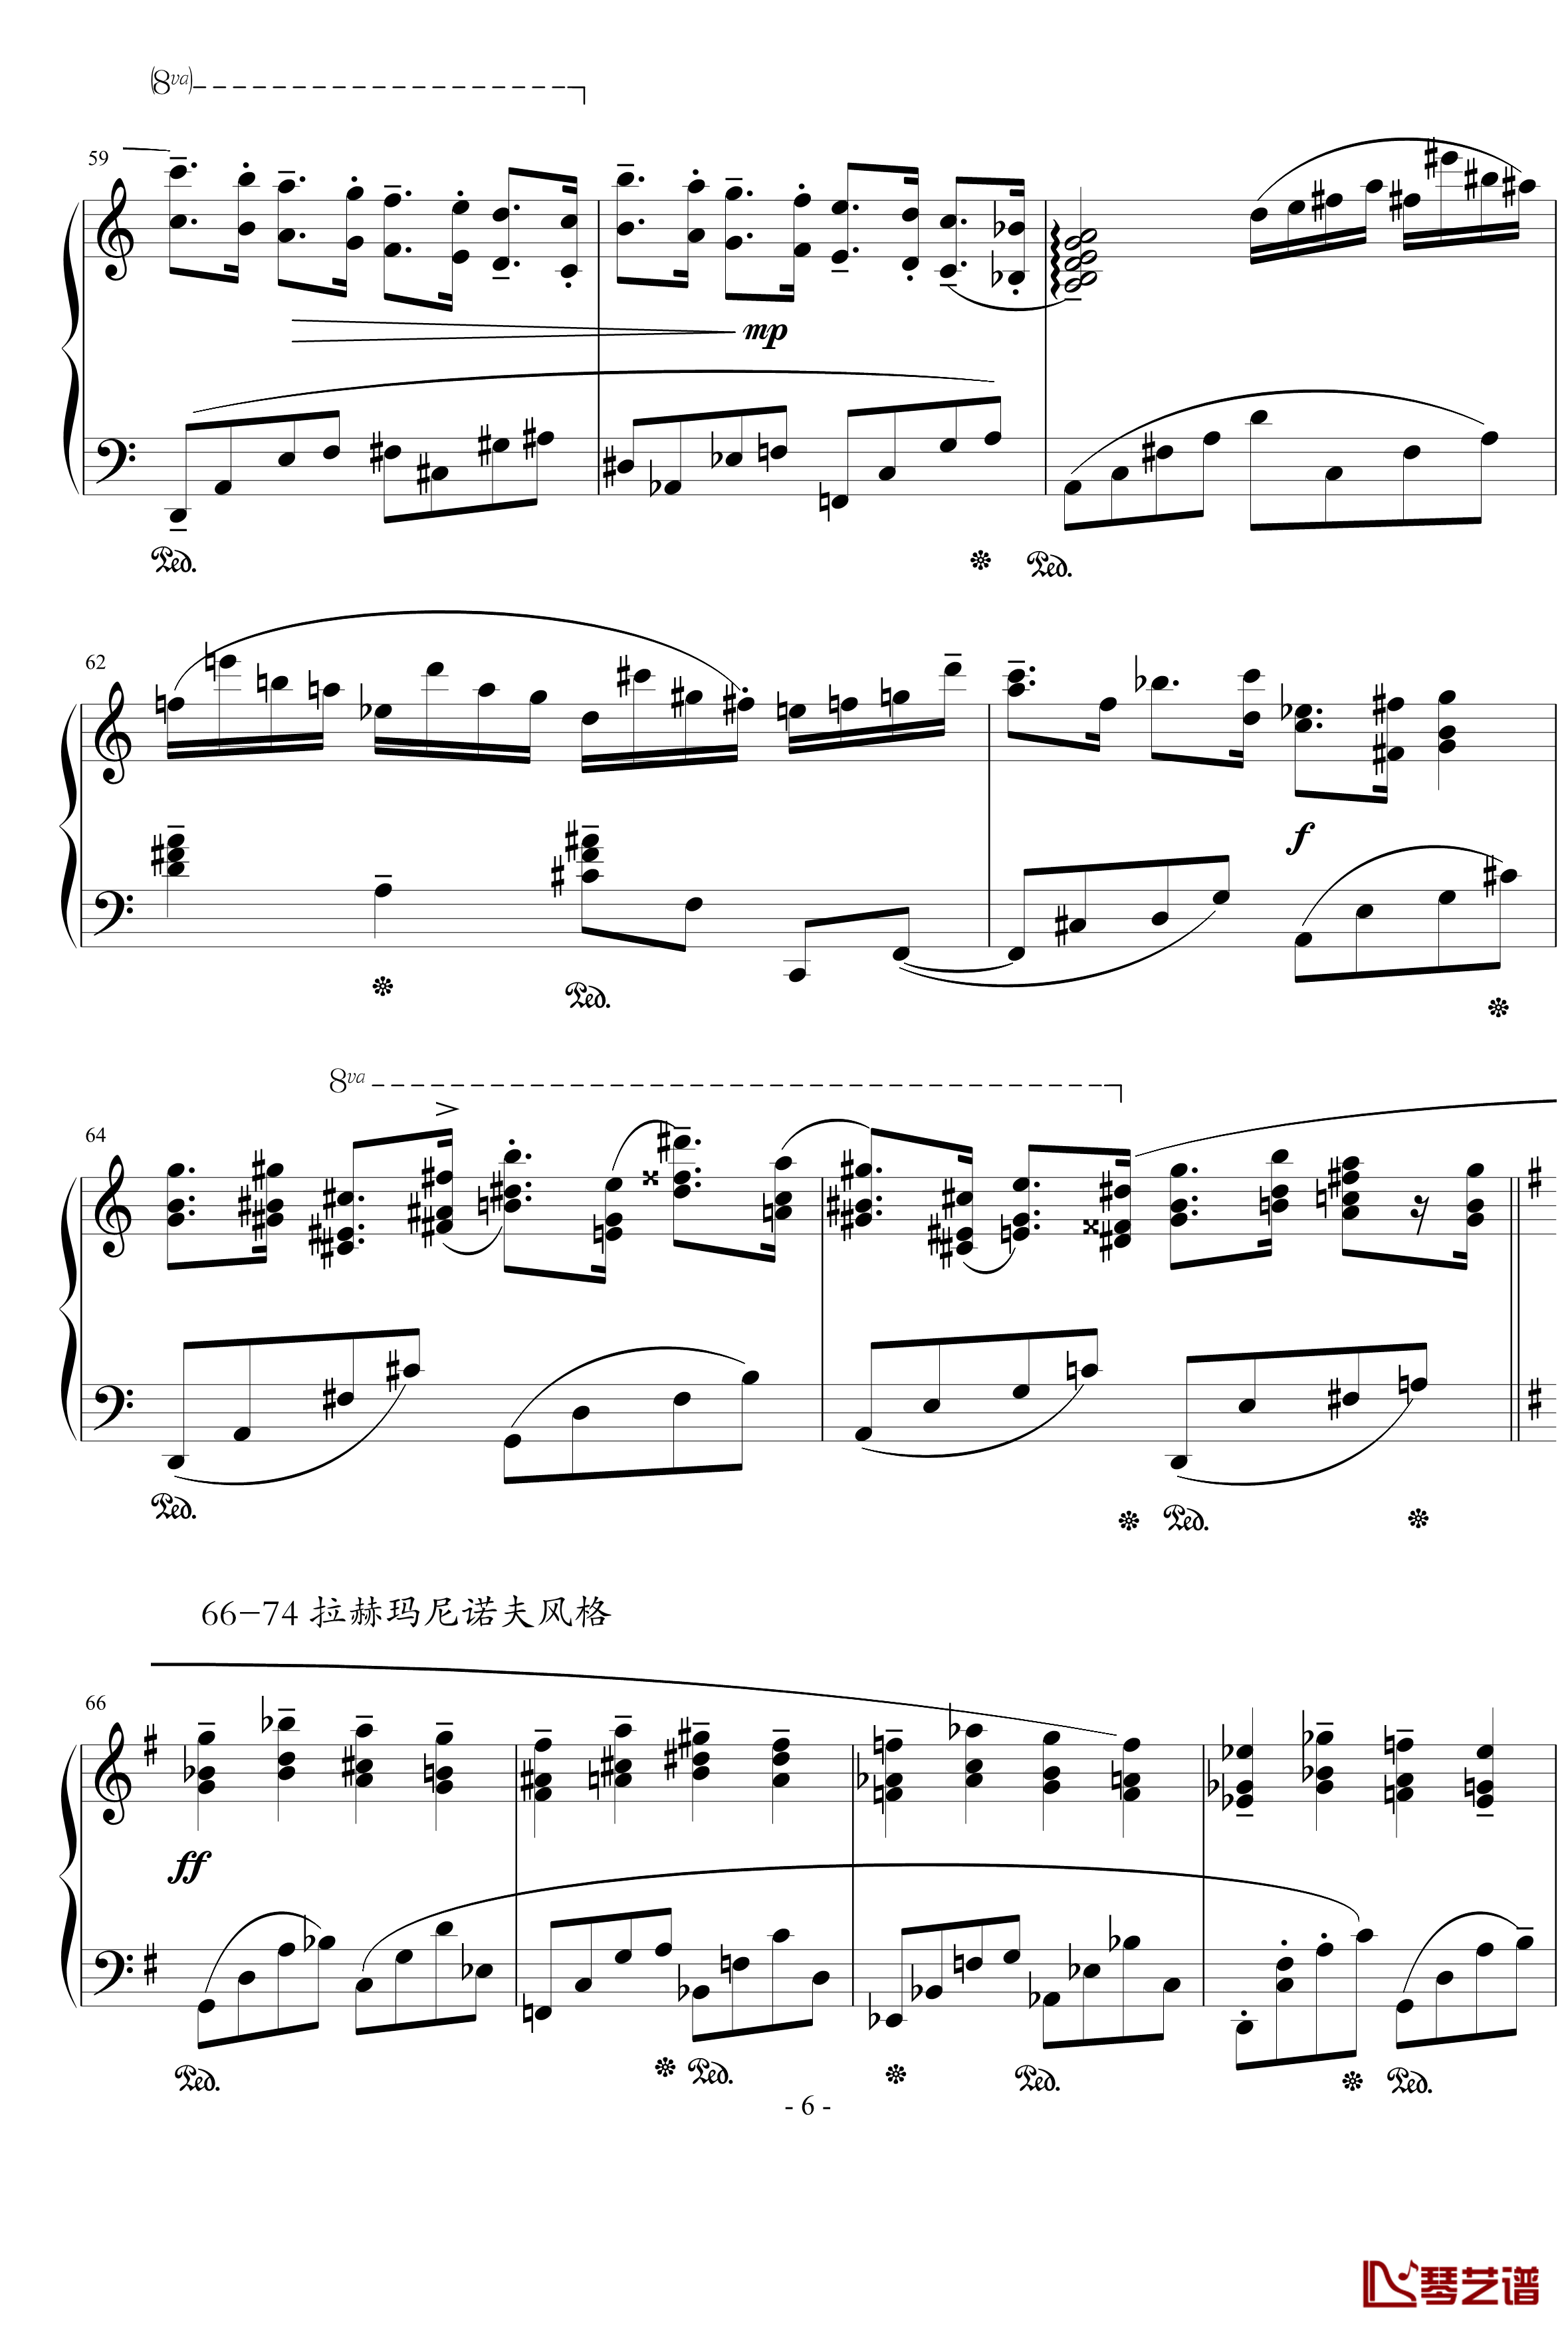  蒙太奇阐释集 钢琴谱-5-流行追梦人